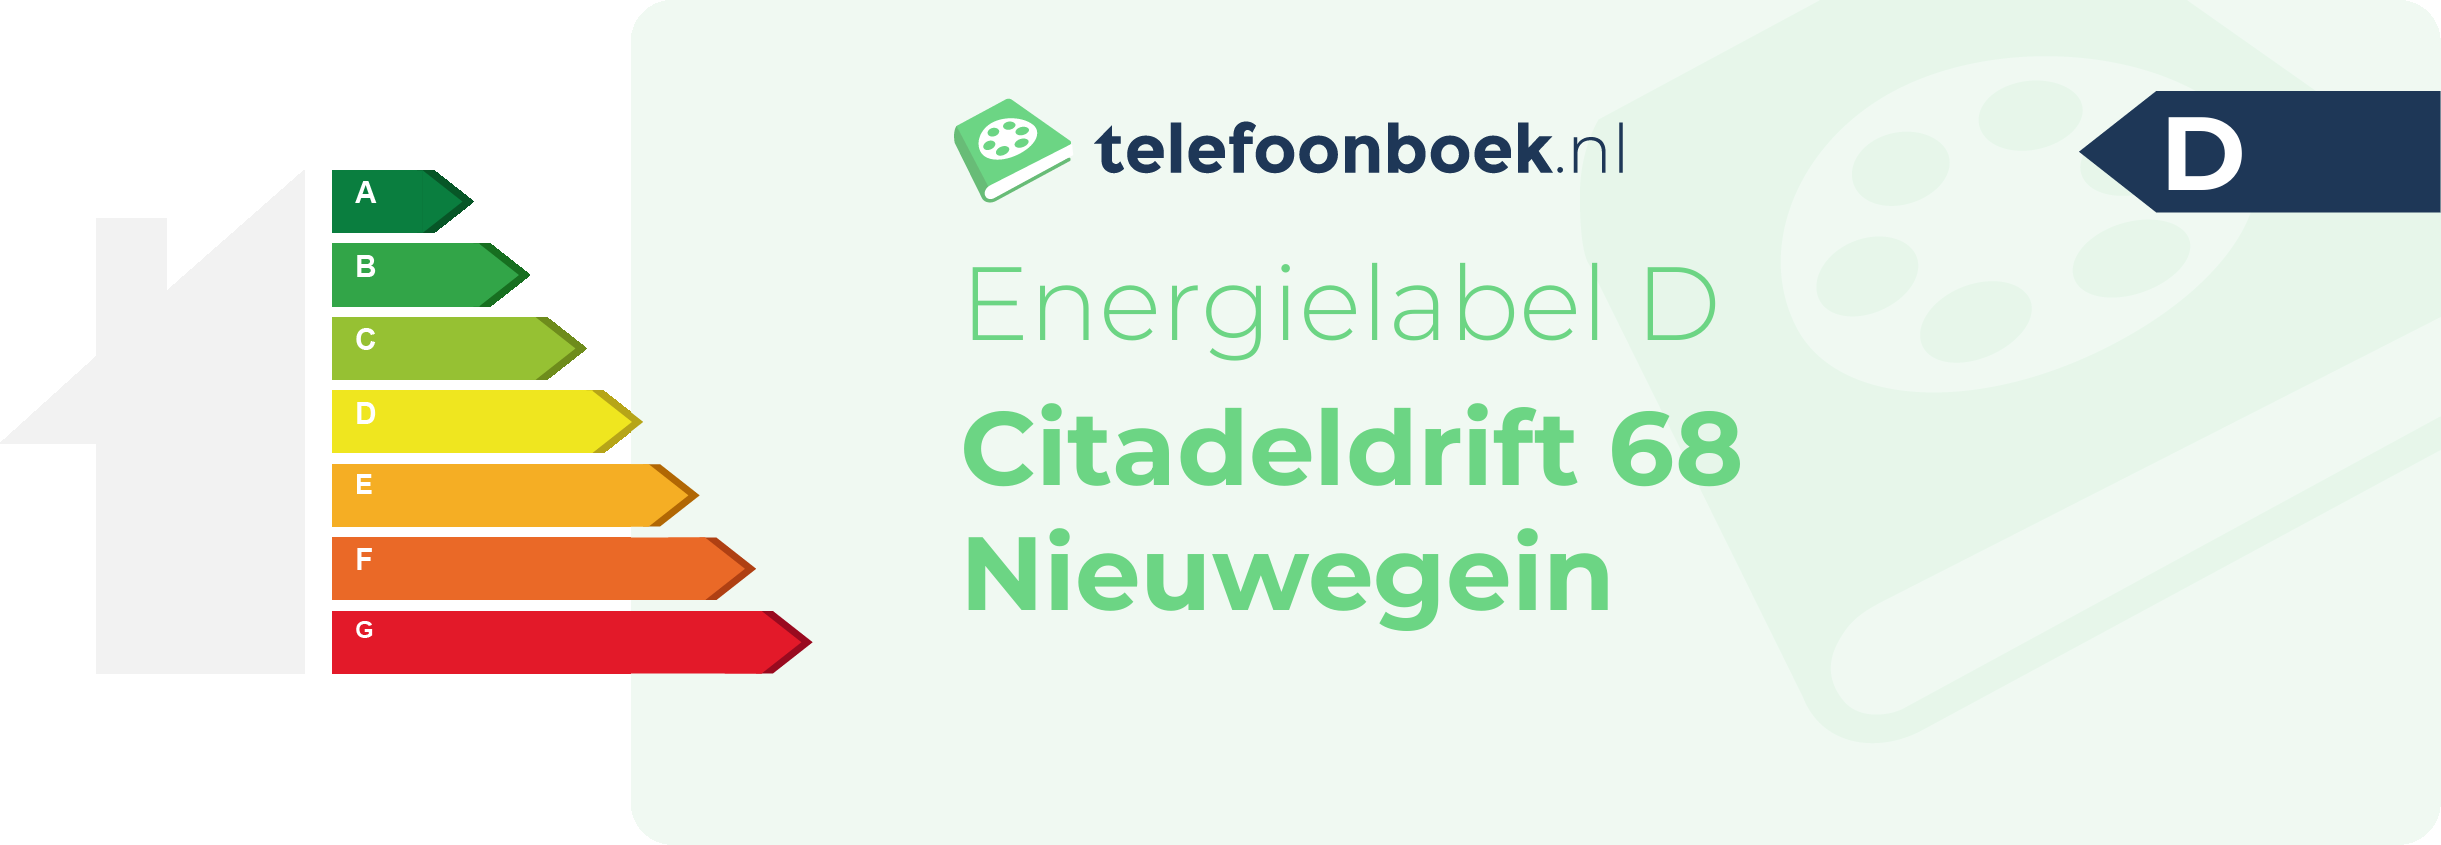 Energielabel Citadeldrift 68 Nieuwegein